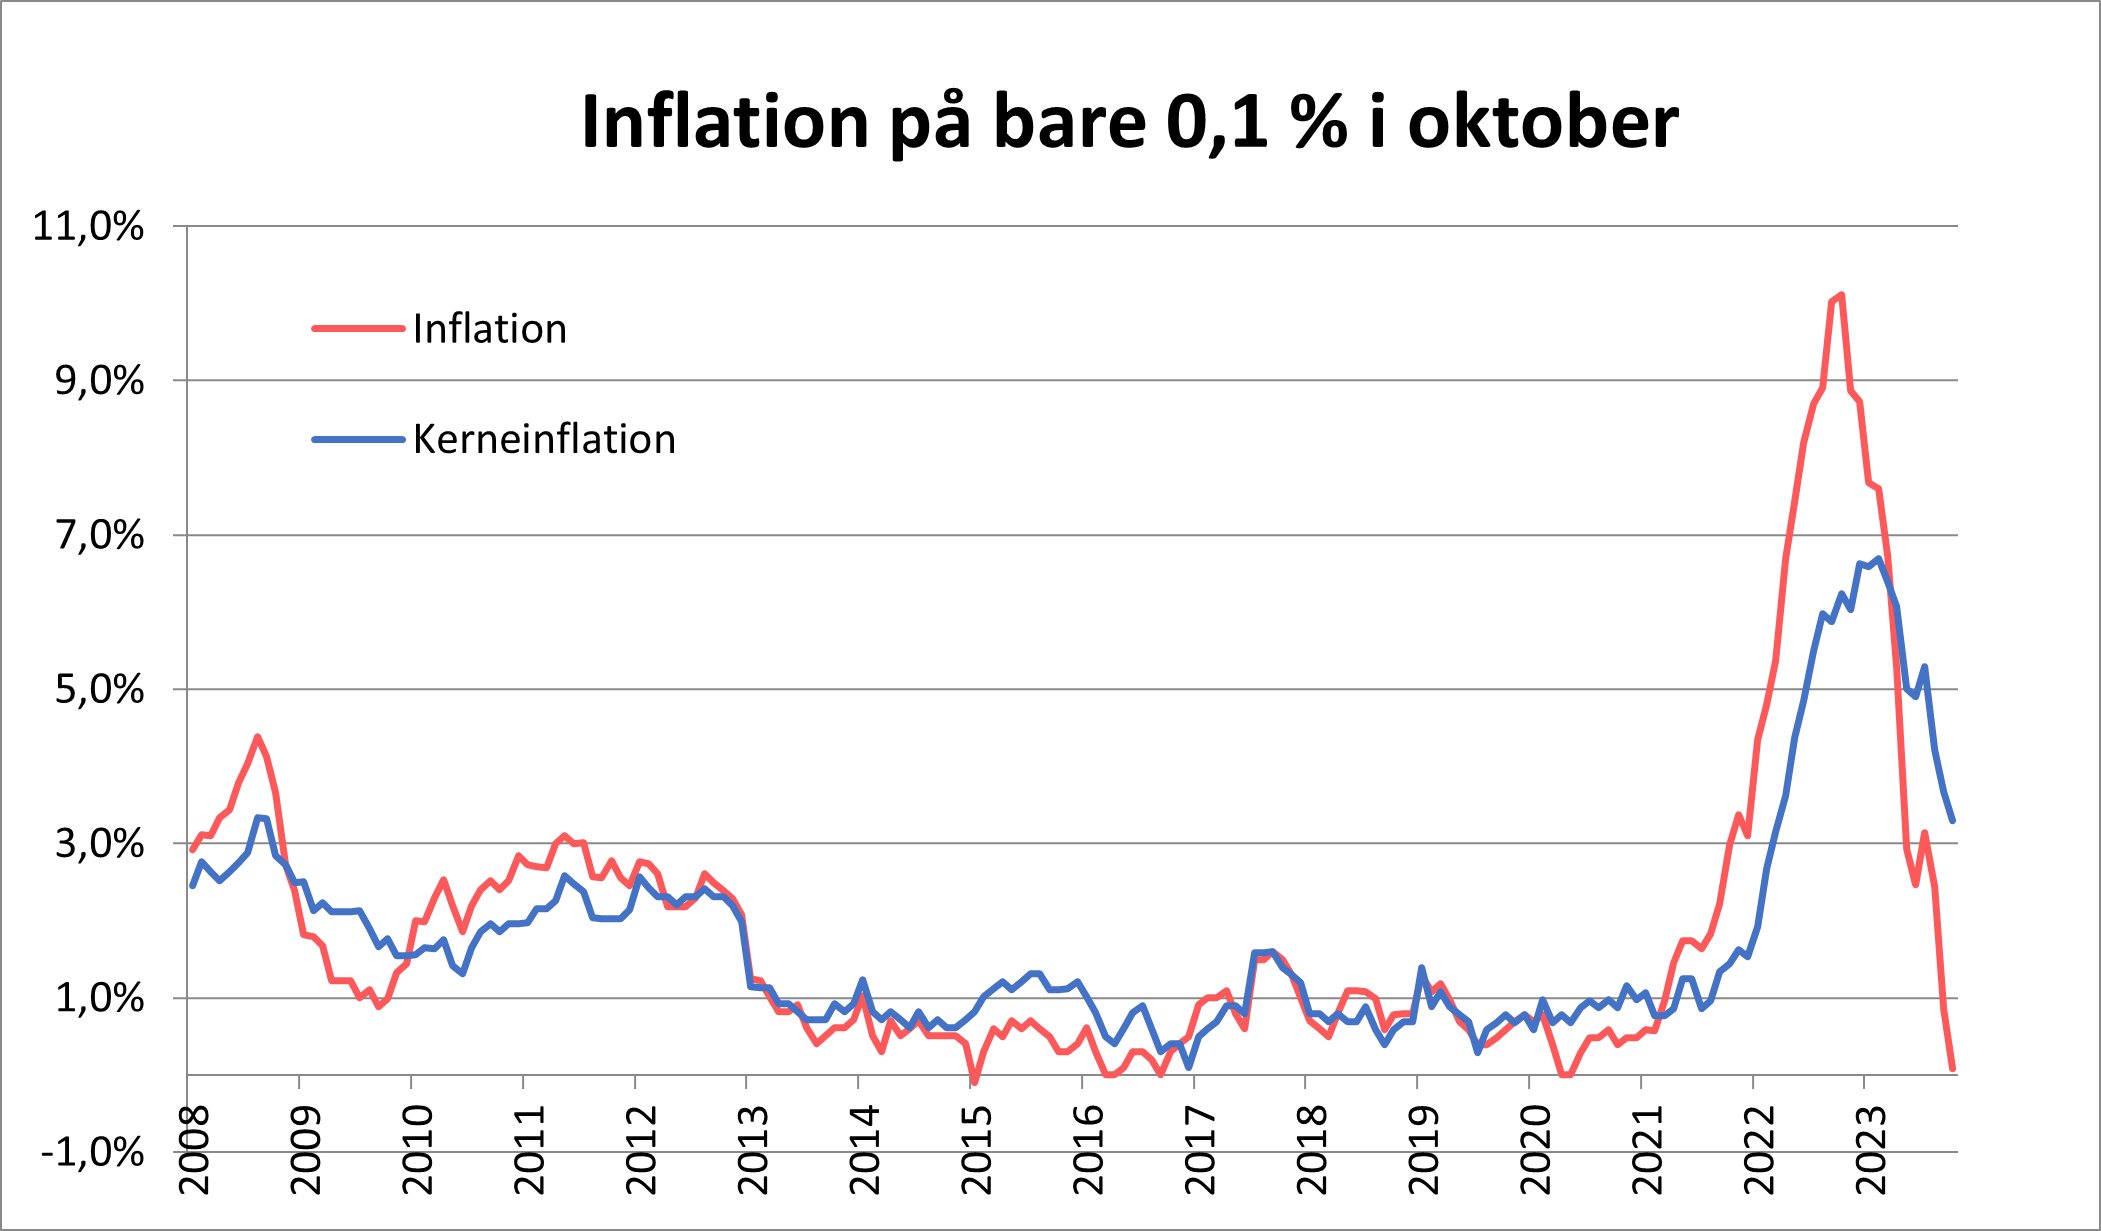 Graf inflationen rammer 0,1 % i oktober